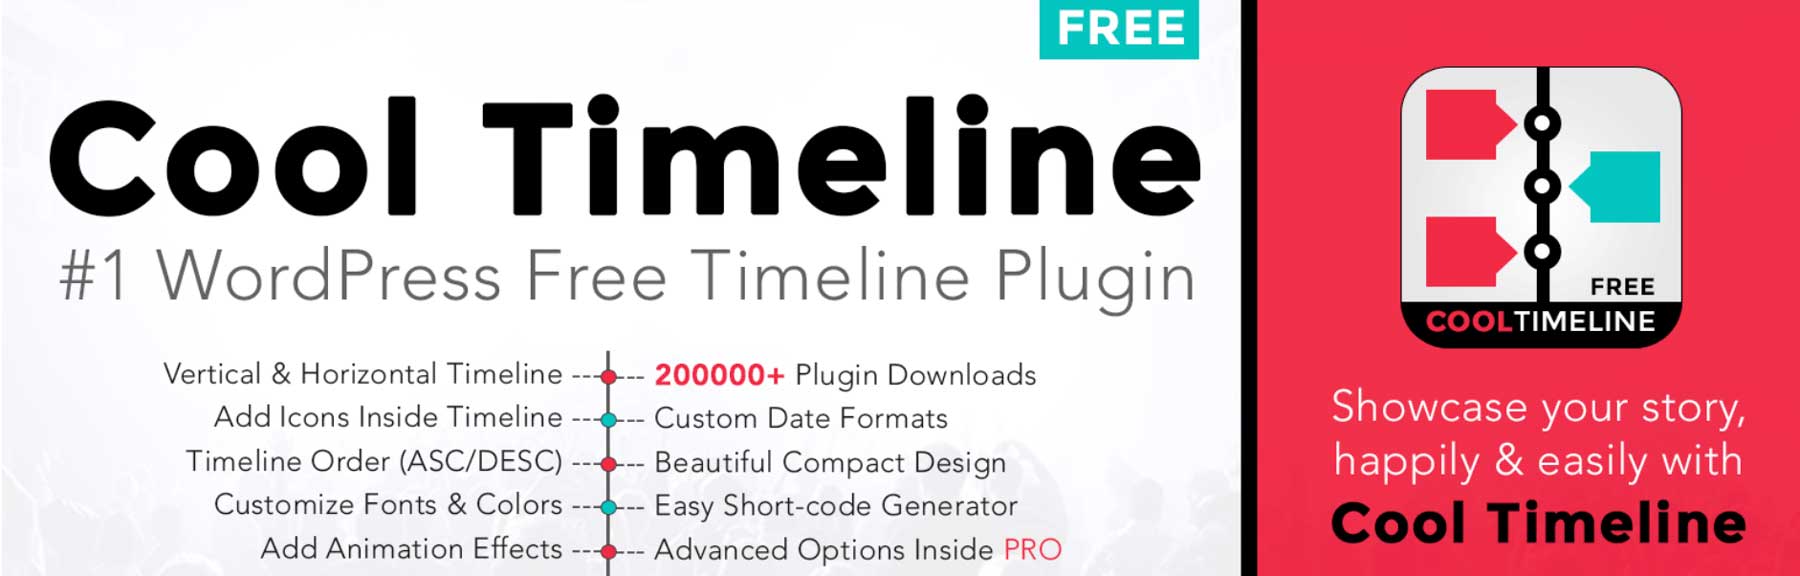 The Cool Timeline WordPress plugin